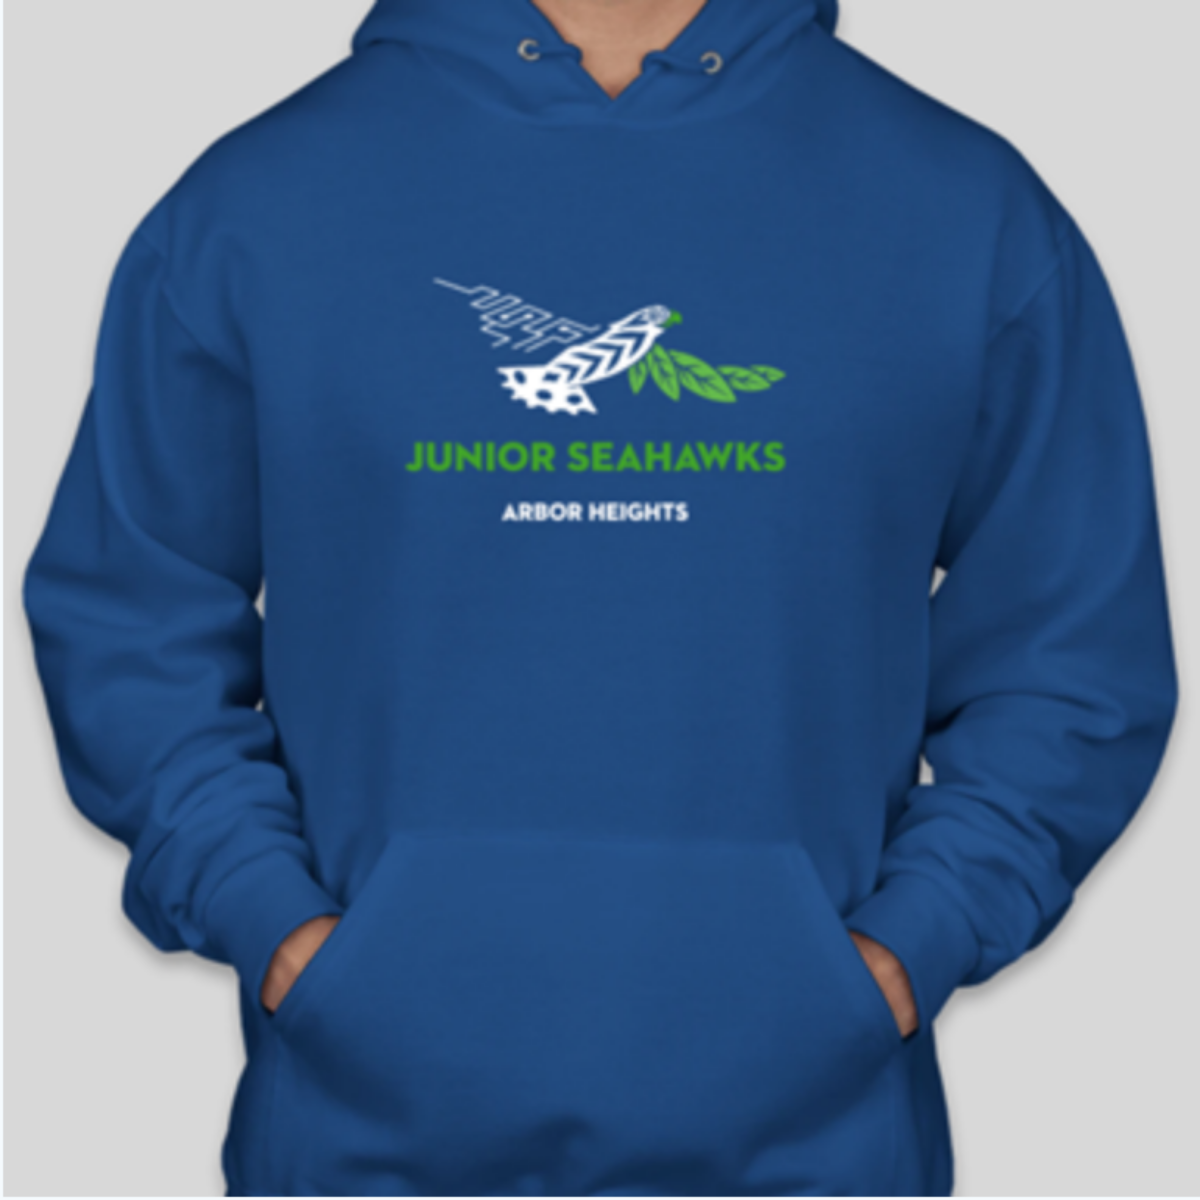 Jr. Seahawk hoodie